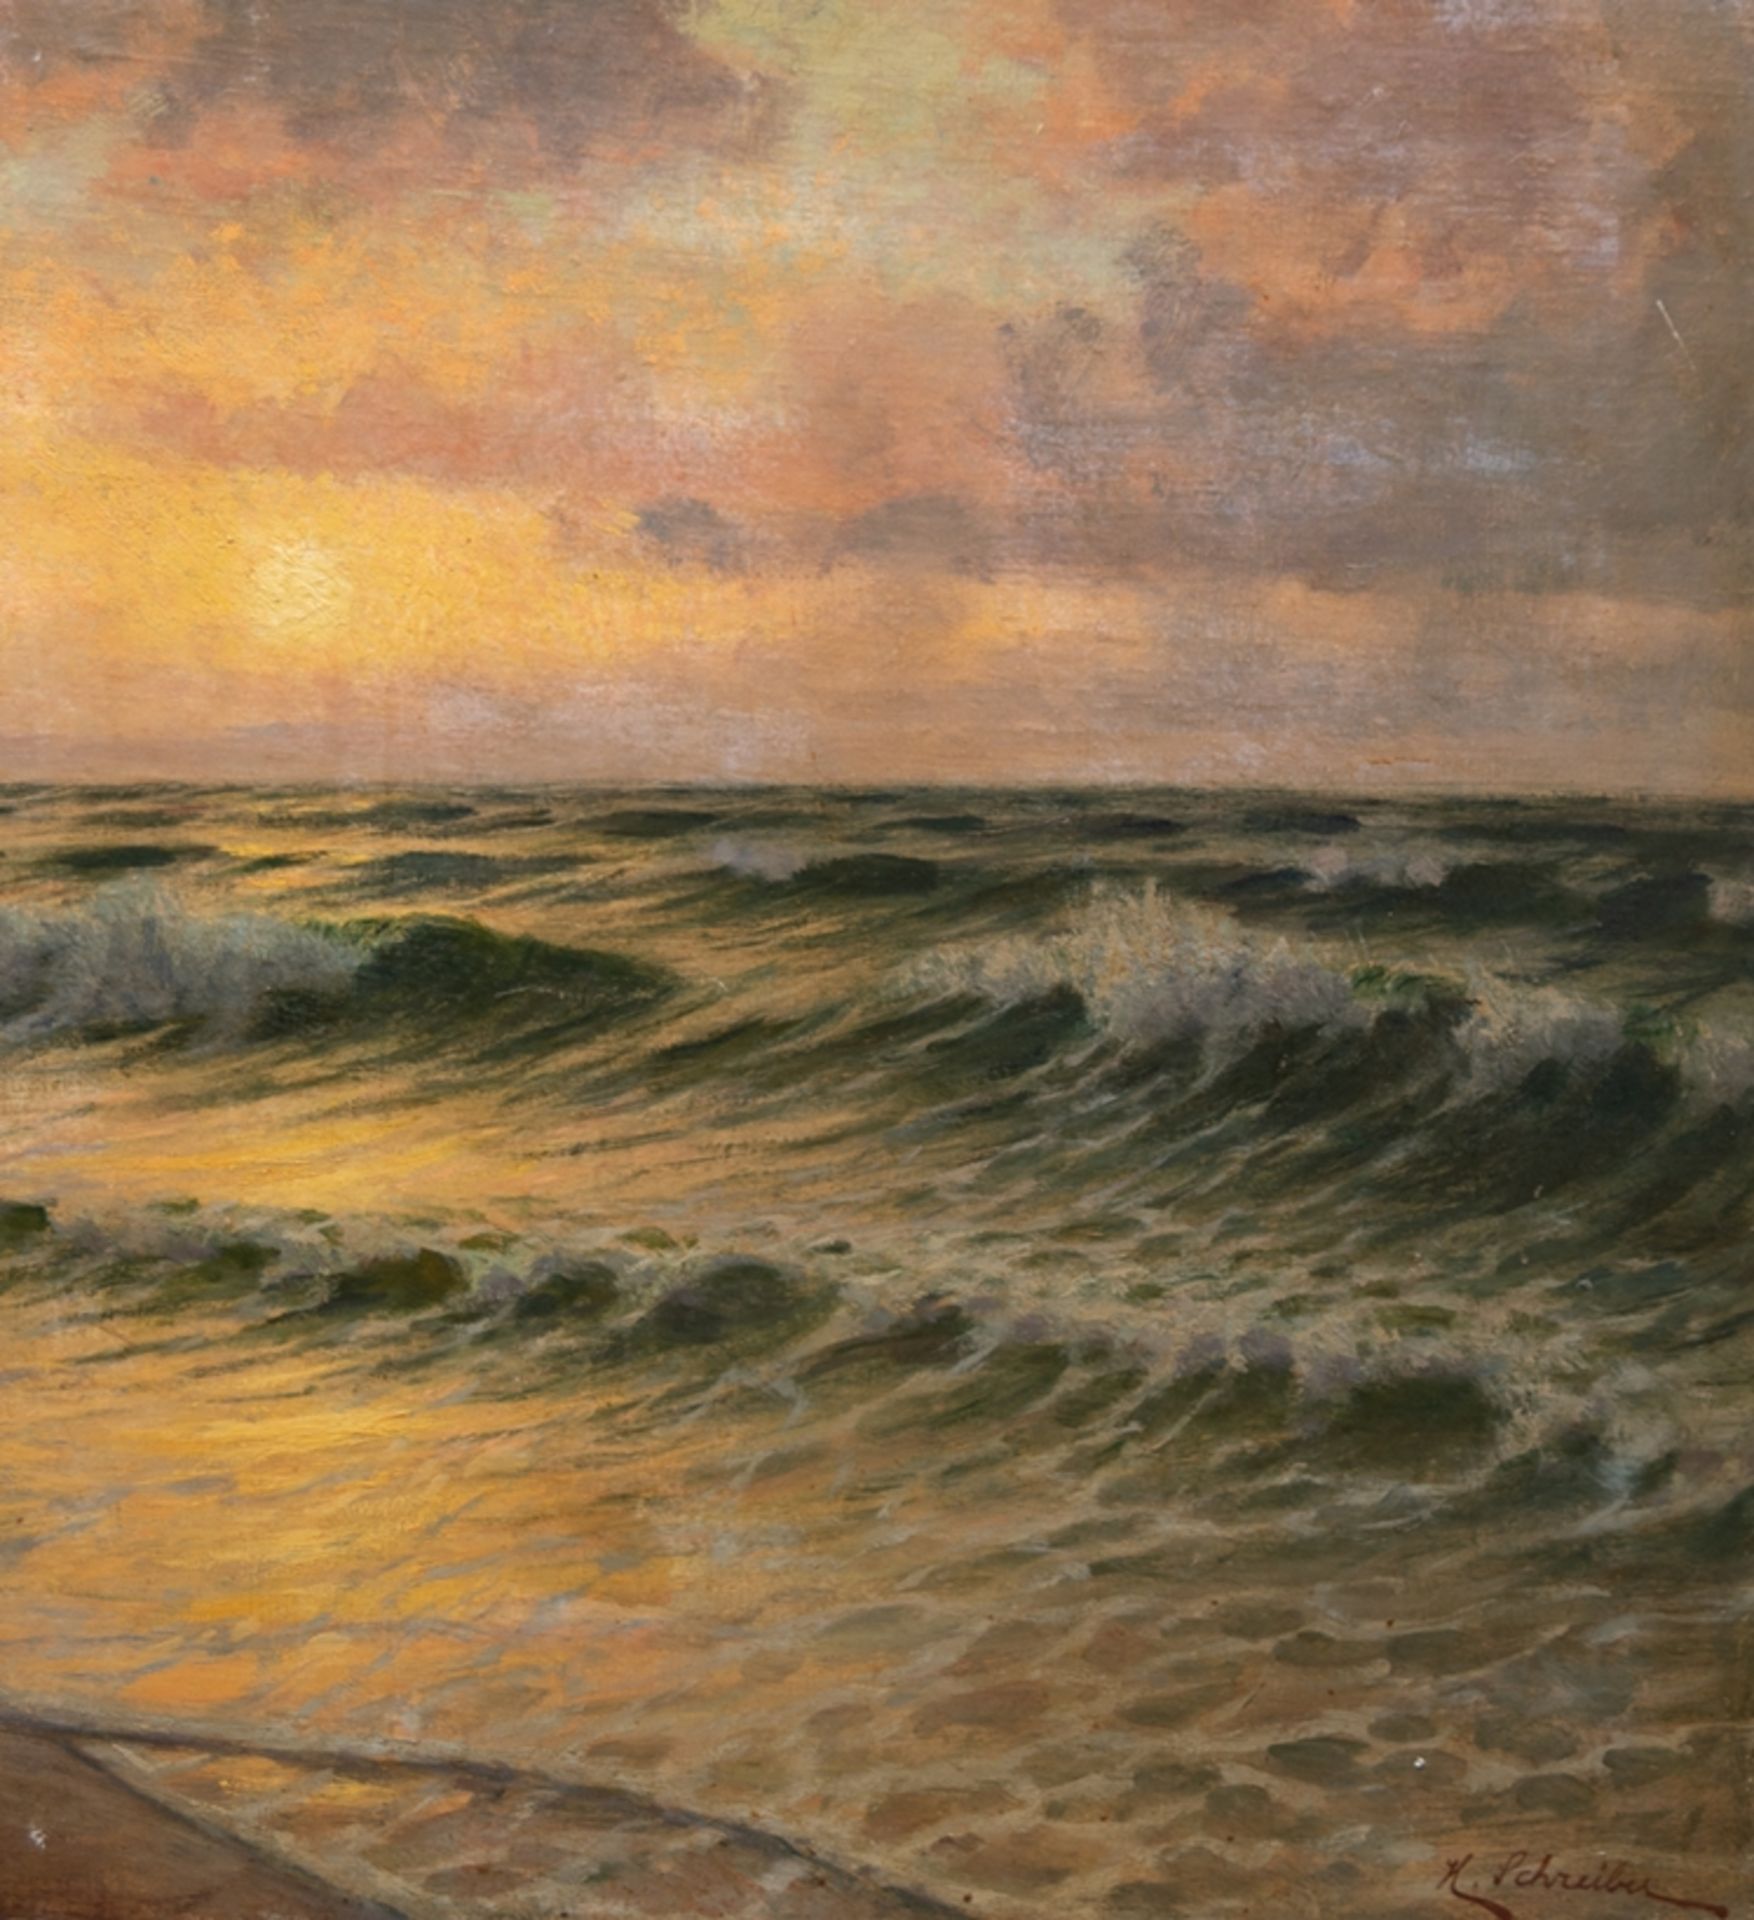 Schreiber, H. "Sonnenuntergang am Meer", Öl/ Lw./ Platte, sign. u.r., 79x70 cm, ungerahmt